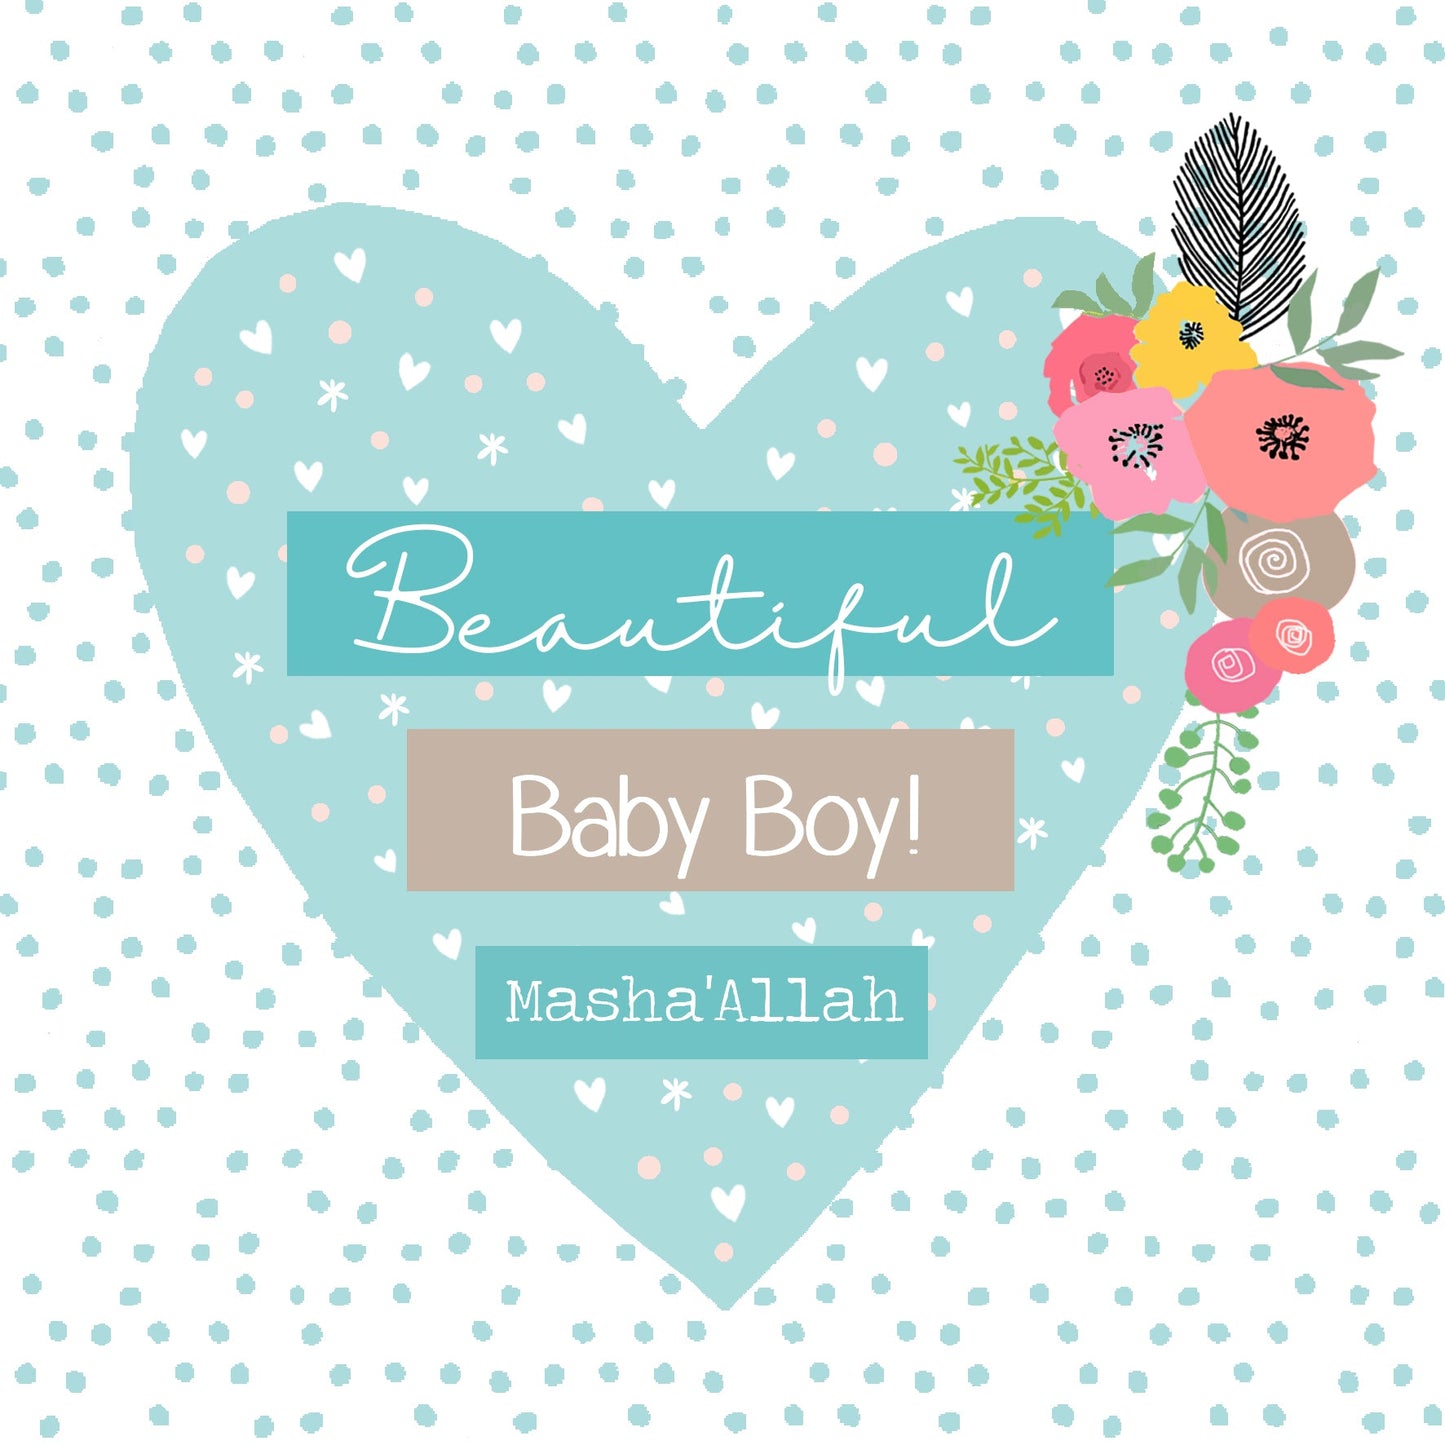 Masha'Allah Baby Boy Card - Blue Heart